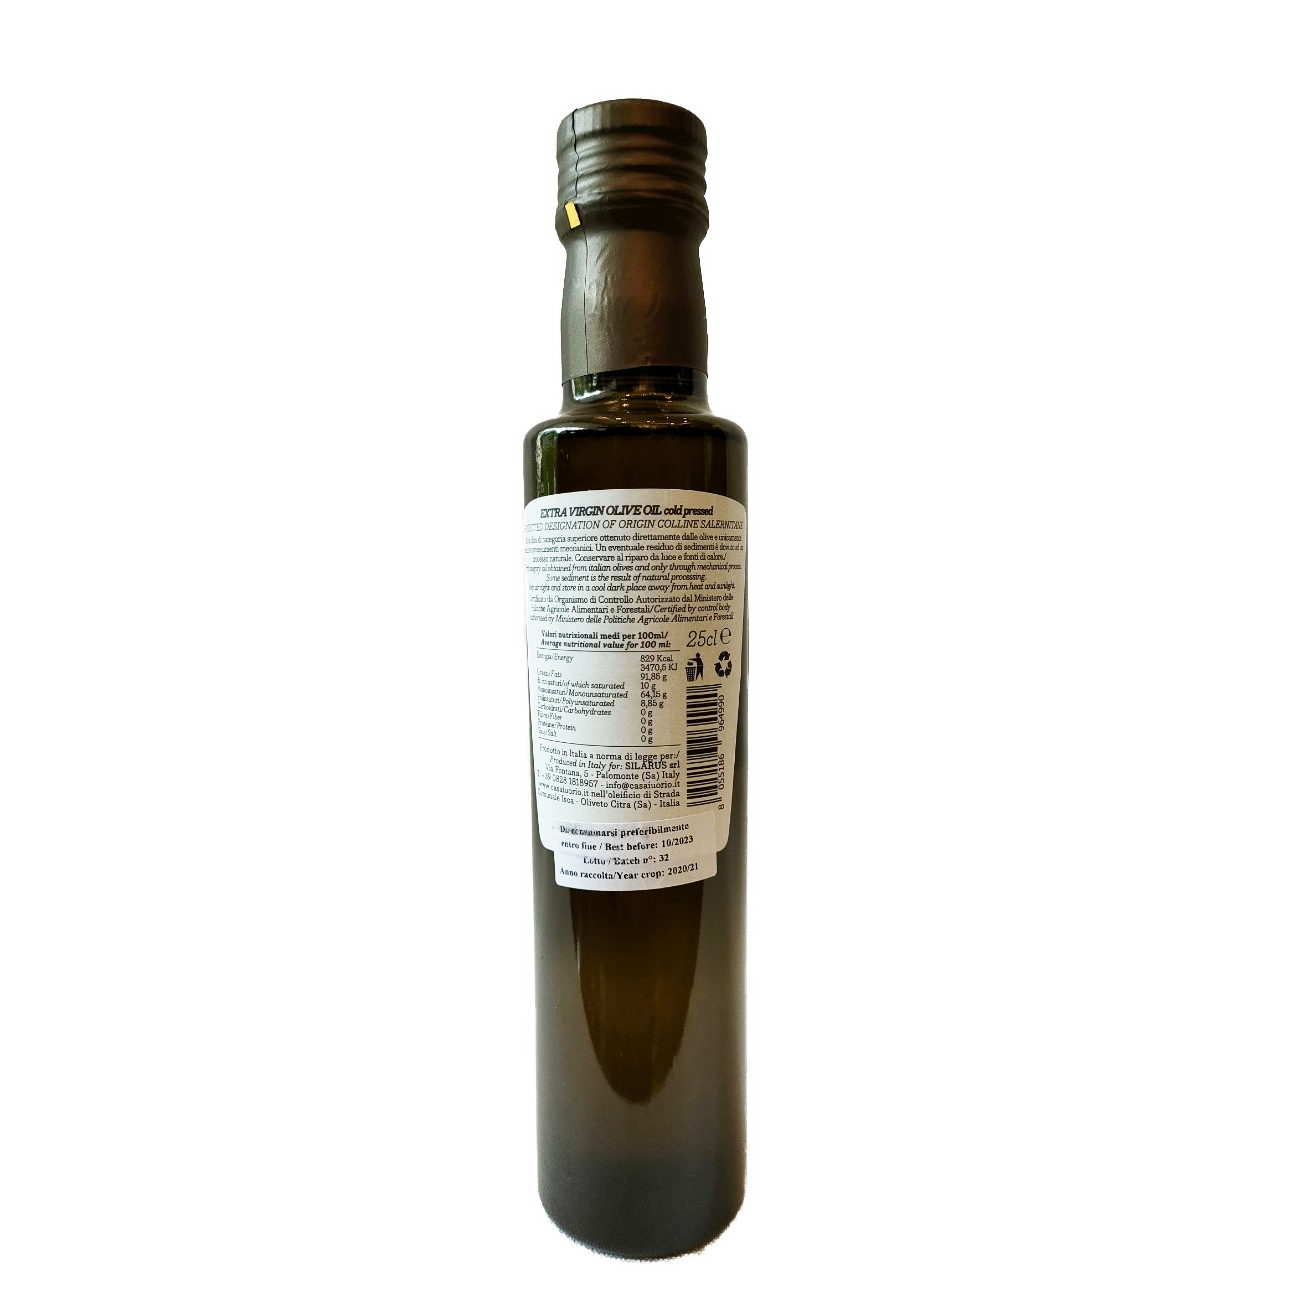 Dầu Olive Nguyên chất Đặc biệt Casa Lourio Nhập khẩu từ Ý 250ml